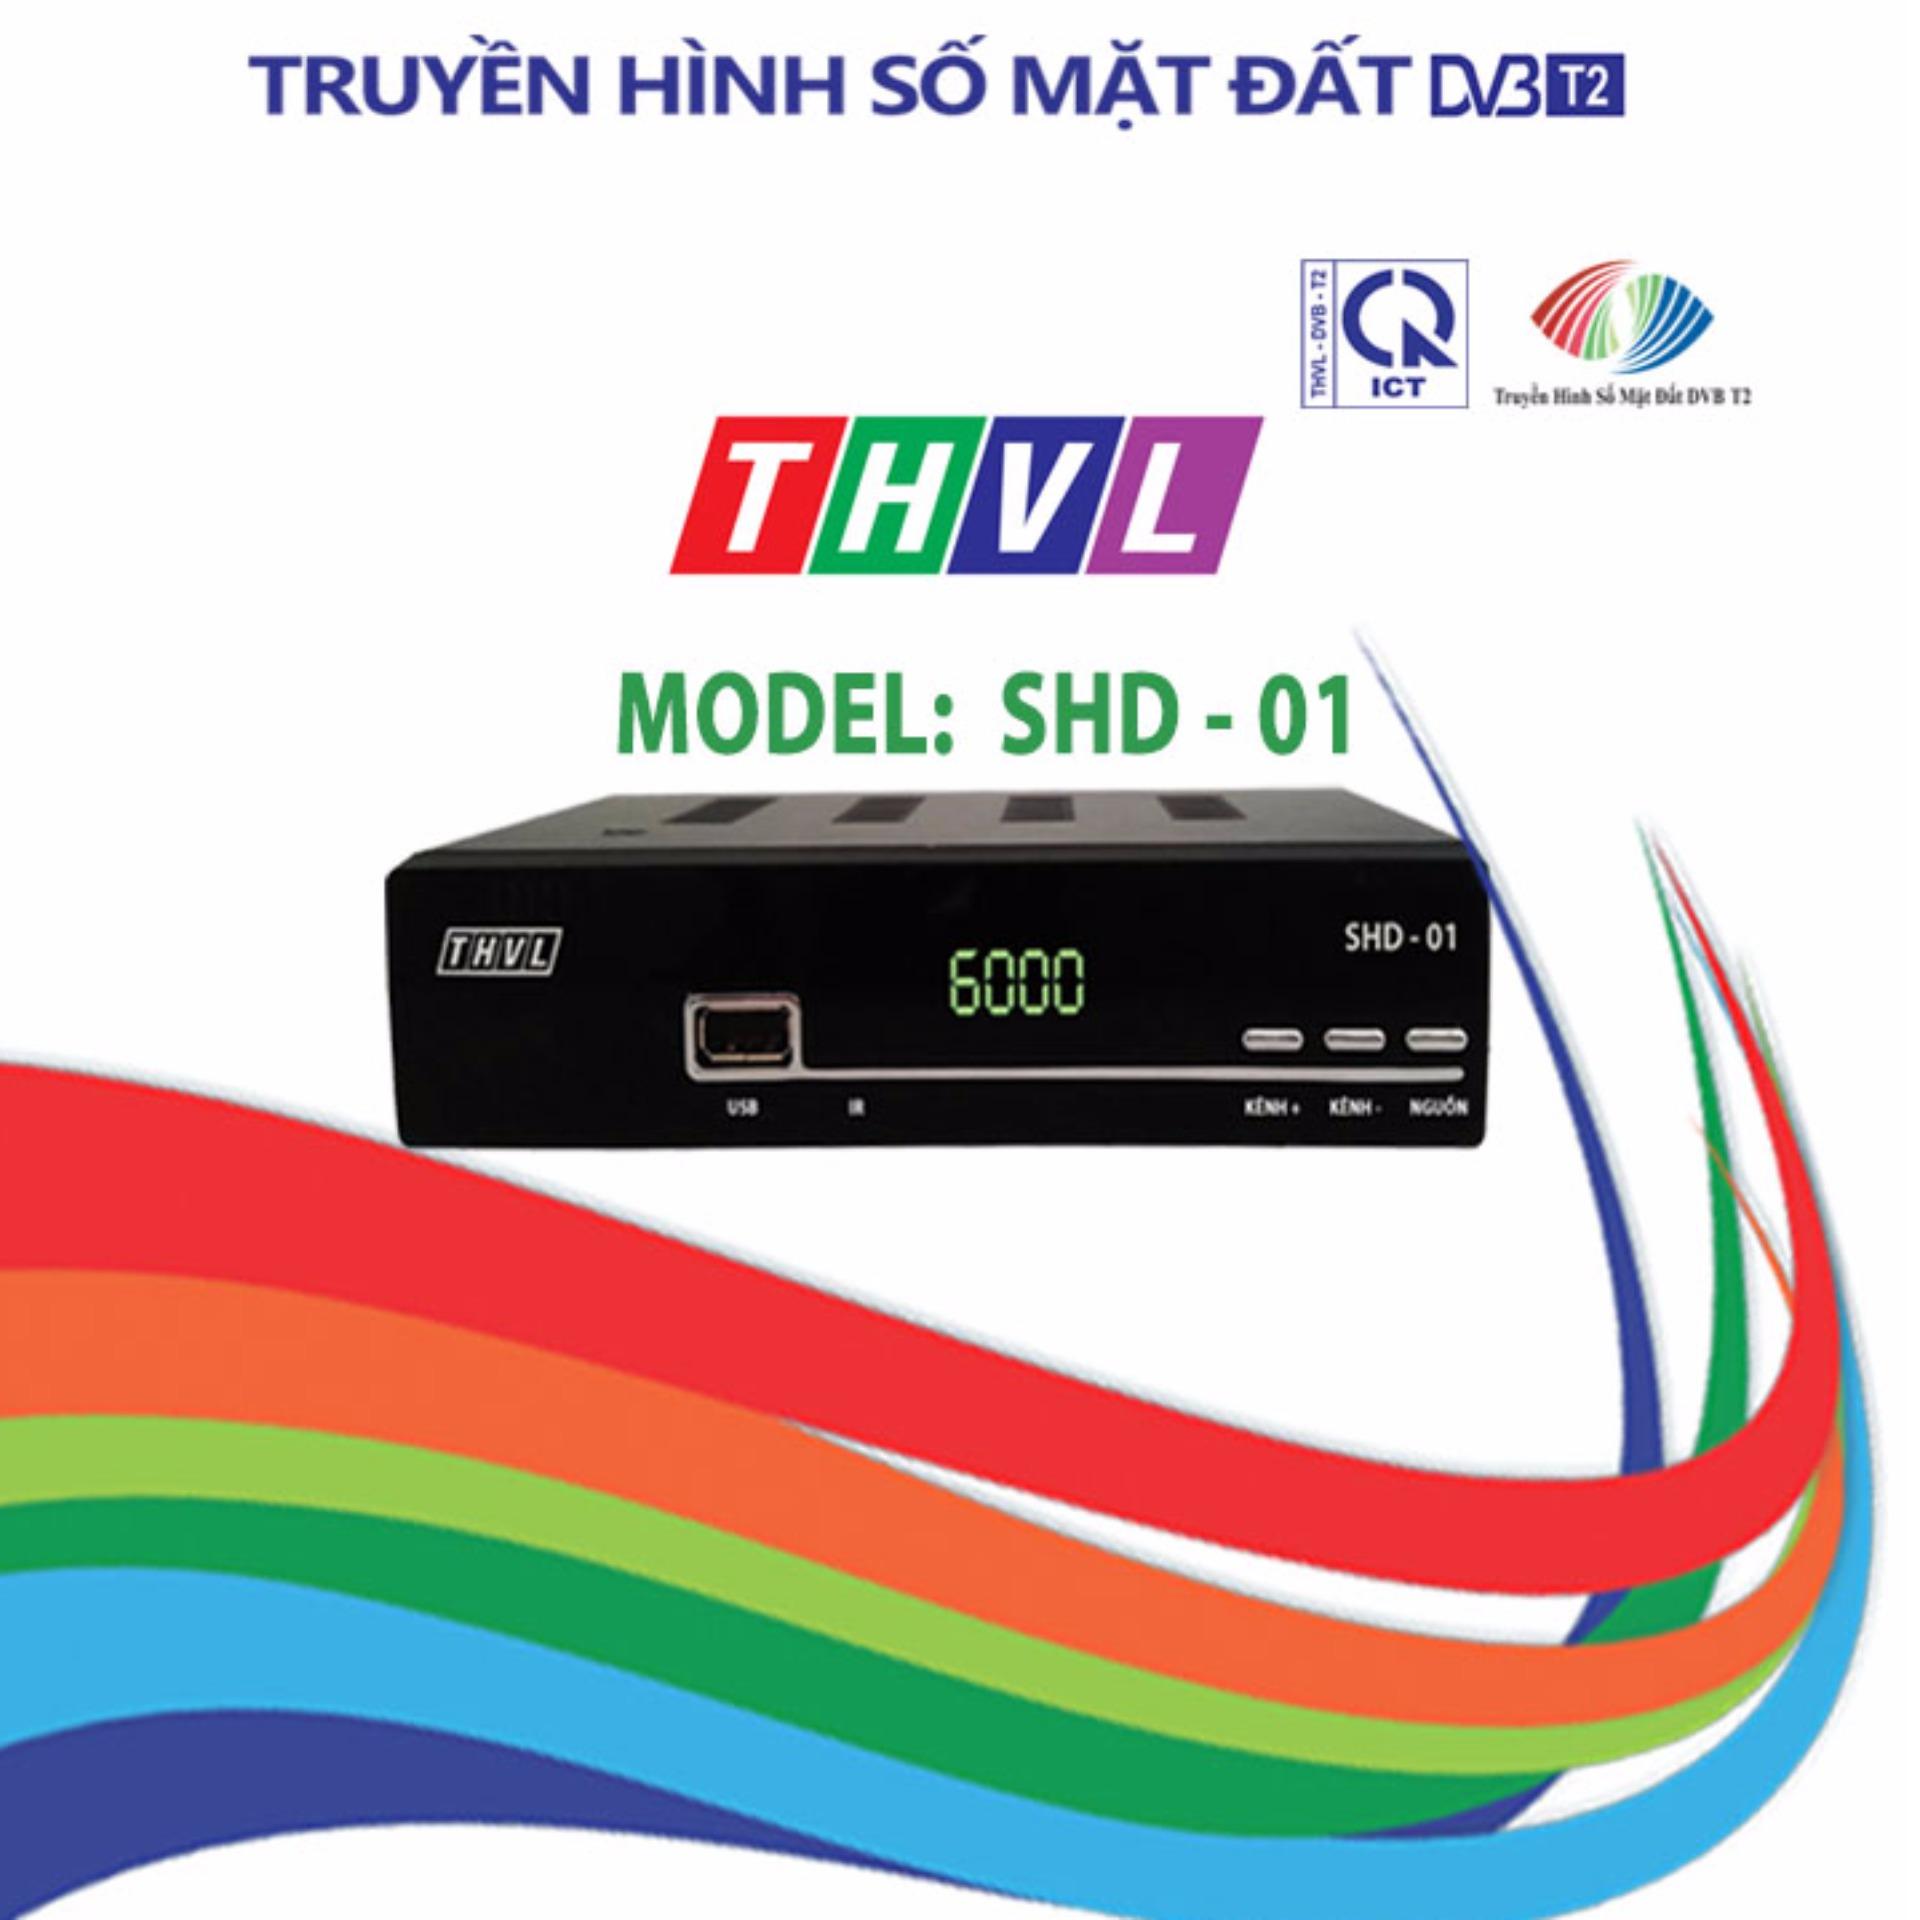 Đầu thu THVL DVB-T2 SHD-01